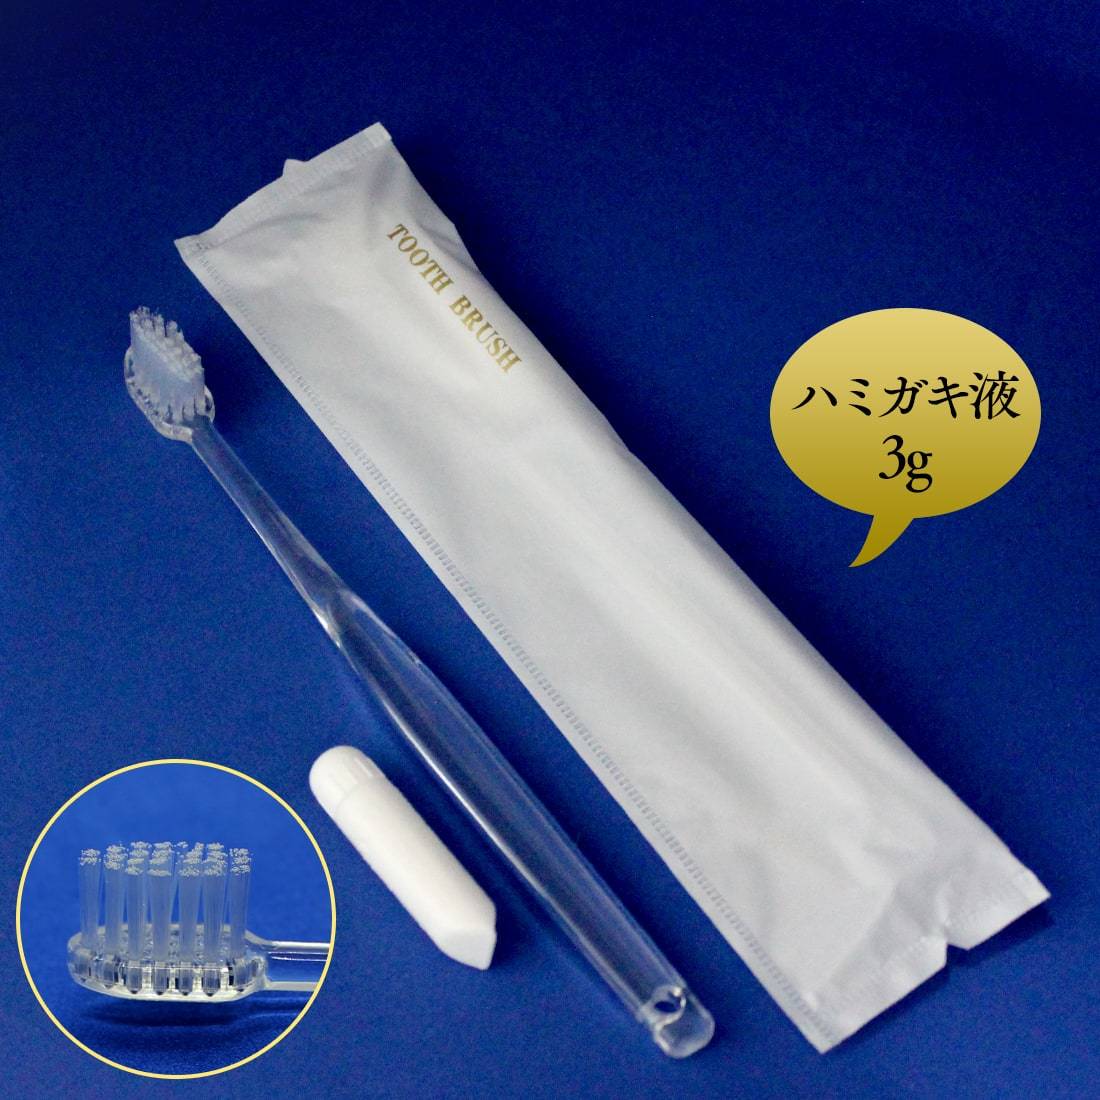 新素材新作 歯ブラシ ホテルアメニティ 業務用 使い捨て 100本 〈 日本製 上品 高級感 個包装 〉166mm 歯磨き粉 3g まとめ買い セット 